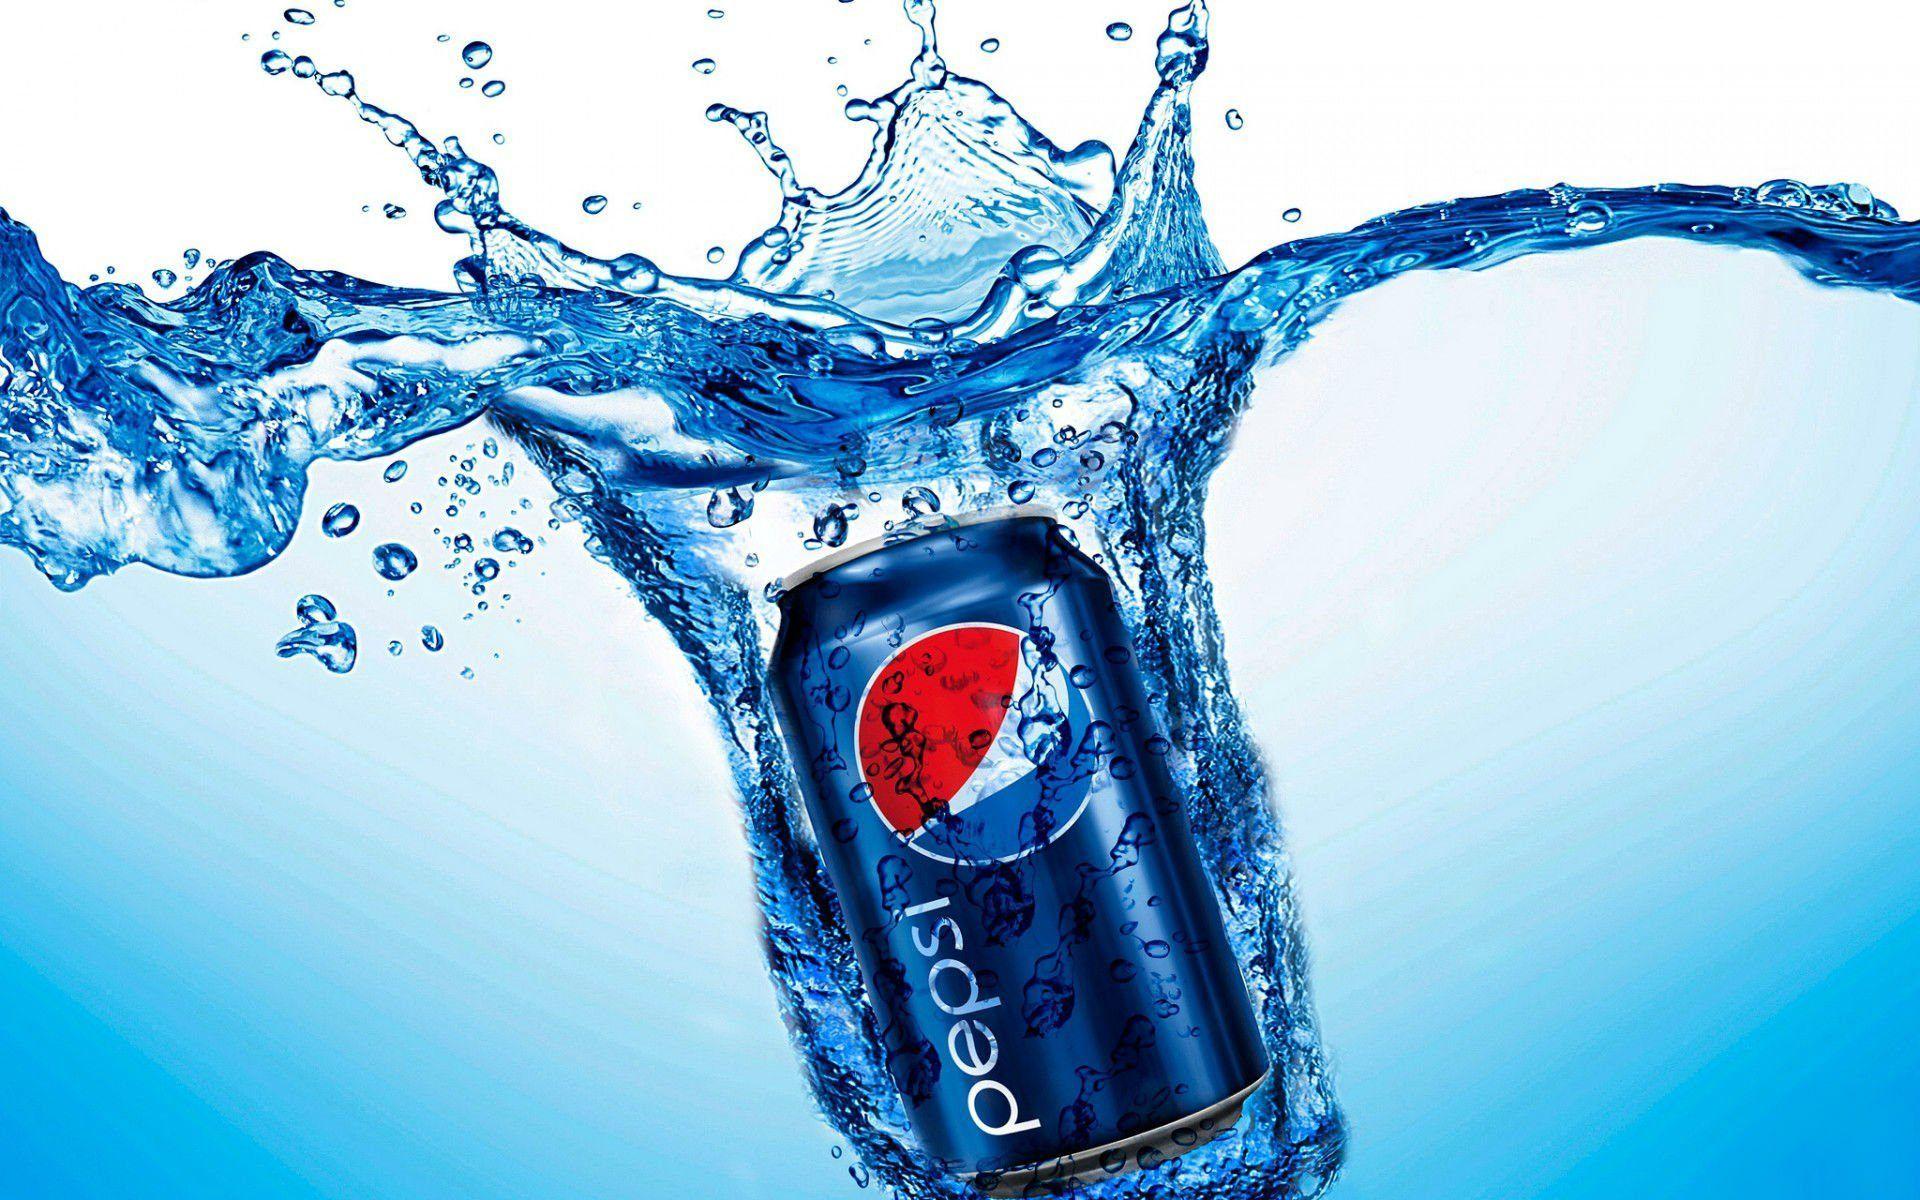 Pepsi Can Water Splash Wallpaper Download Of Pepsi Cola